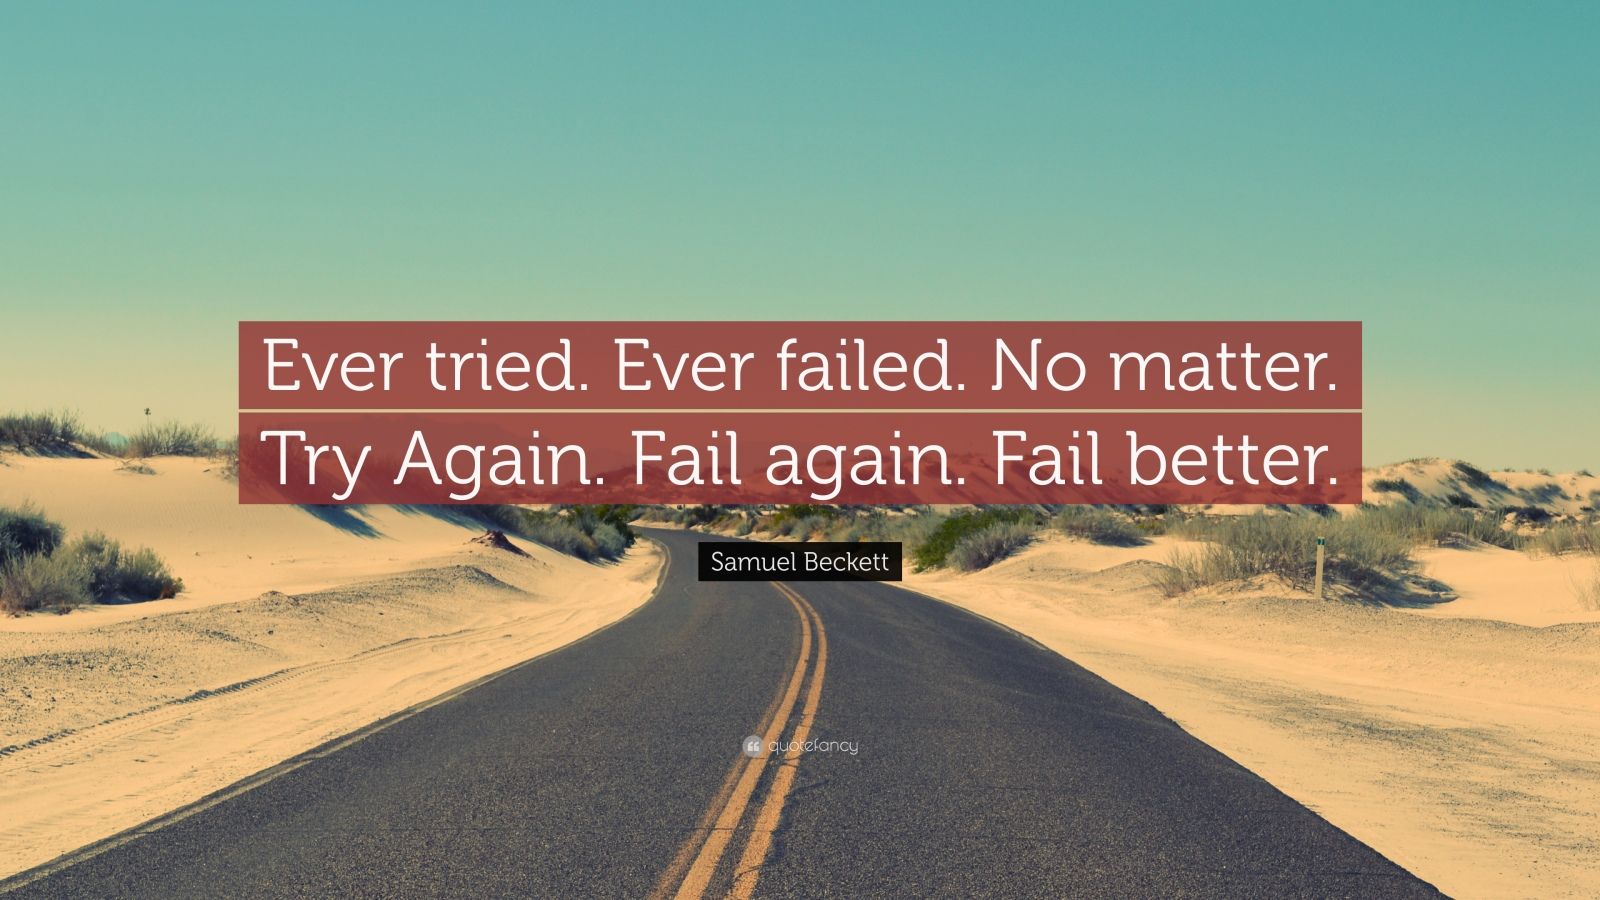 samuel-beckett-quote-ever-tried-ever-failed-no-matter-try-again-fail-again-fail-better